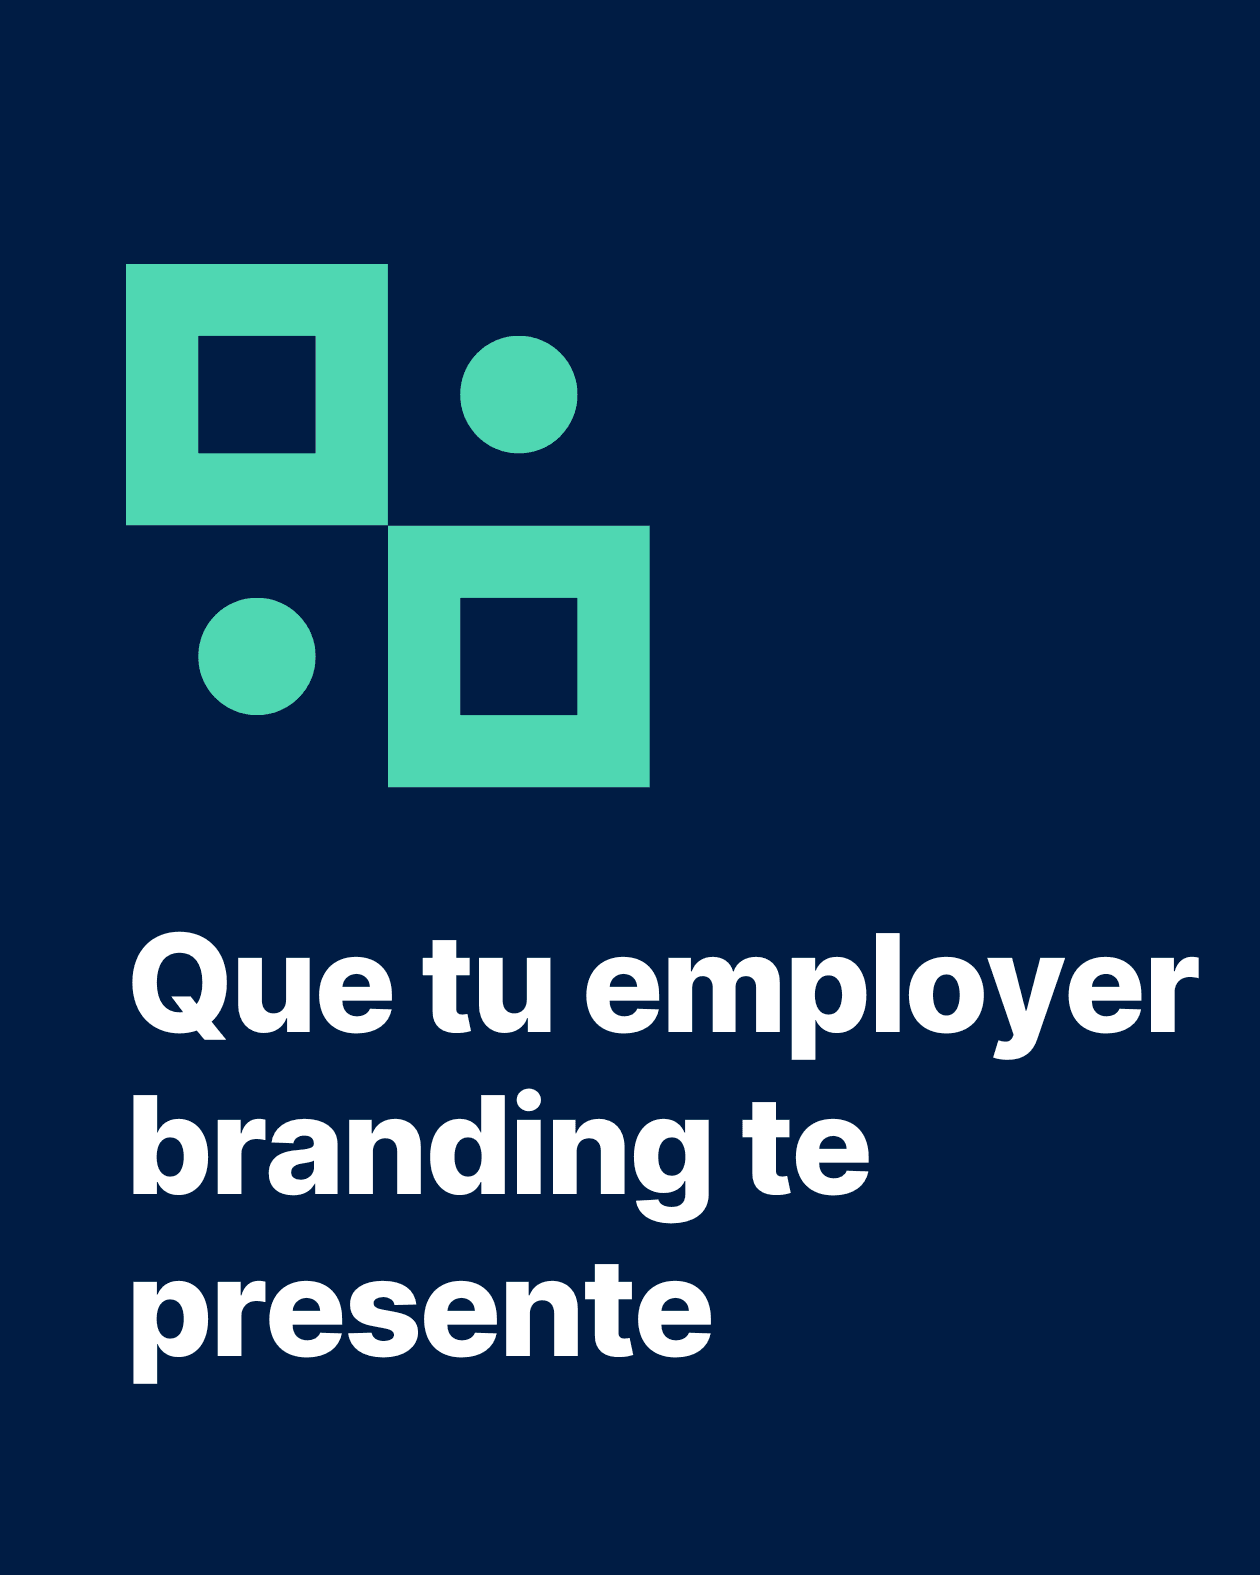 Portada de blog sobre estrategia de employer branding